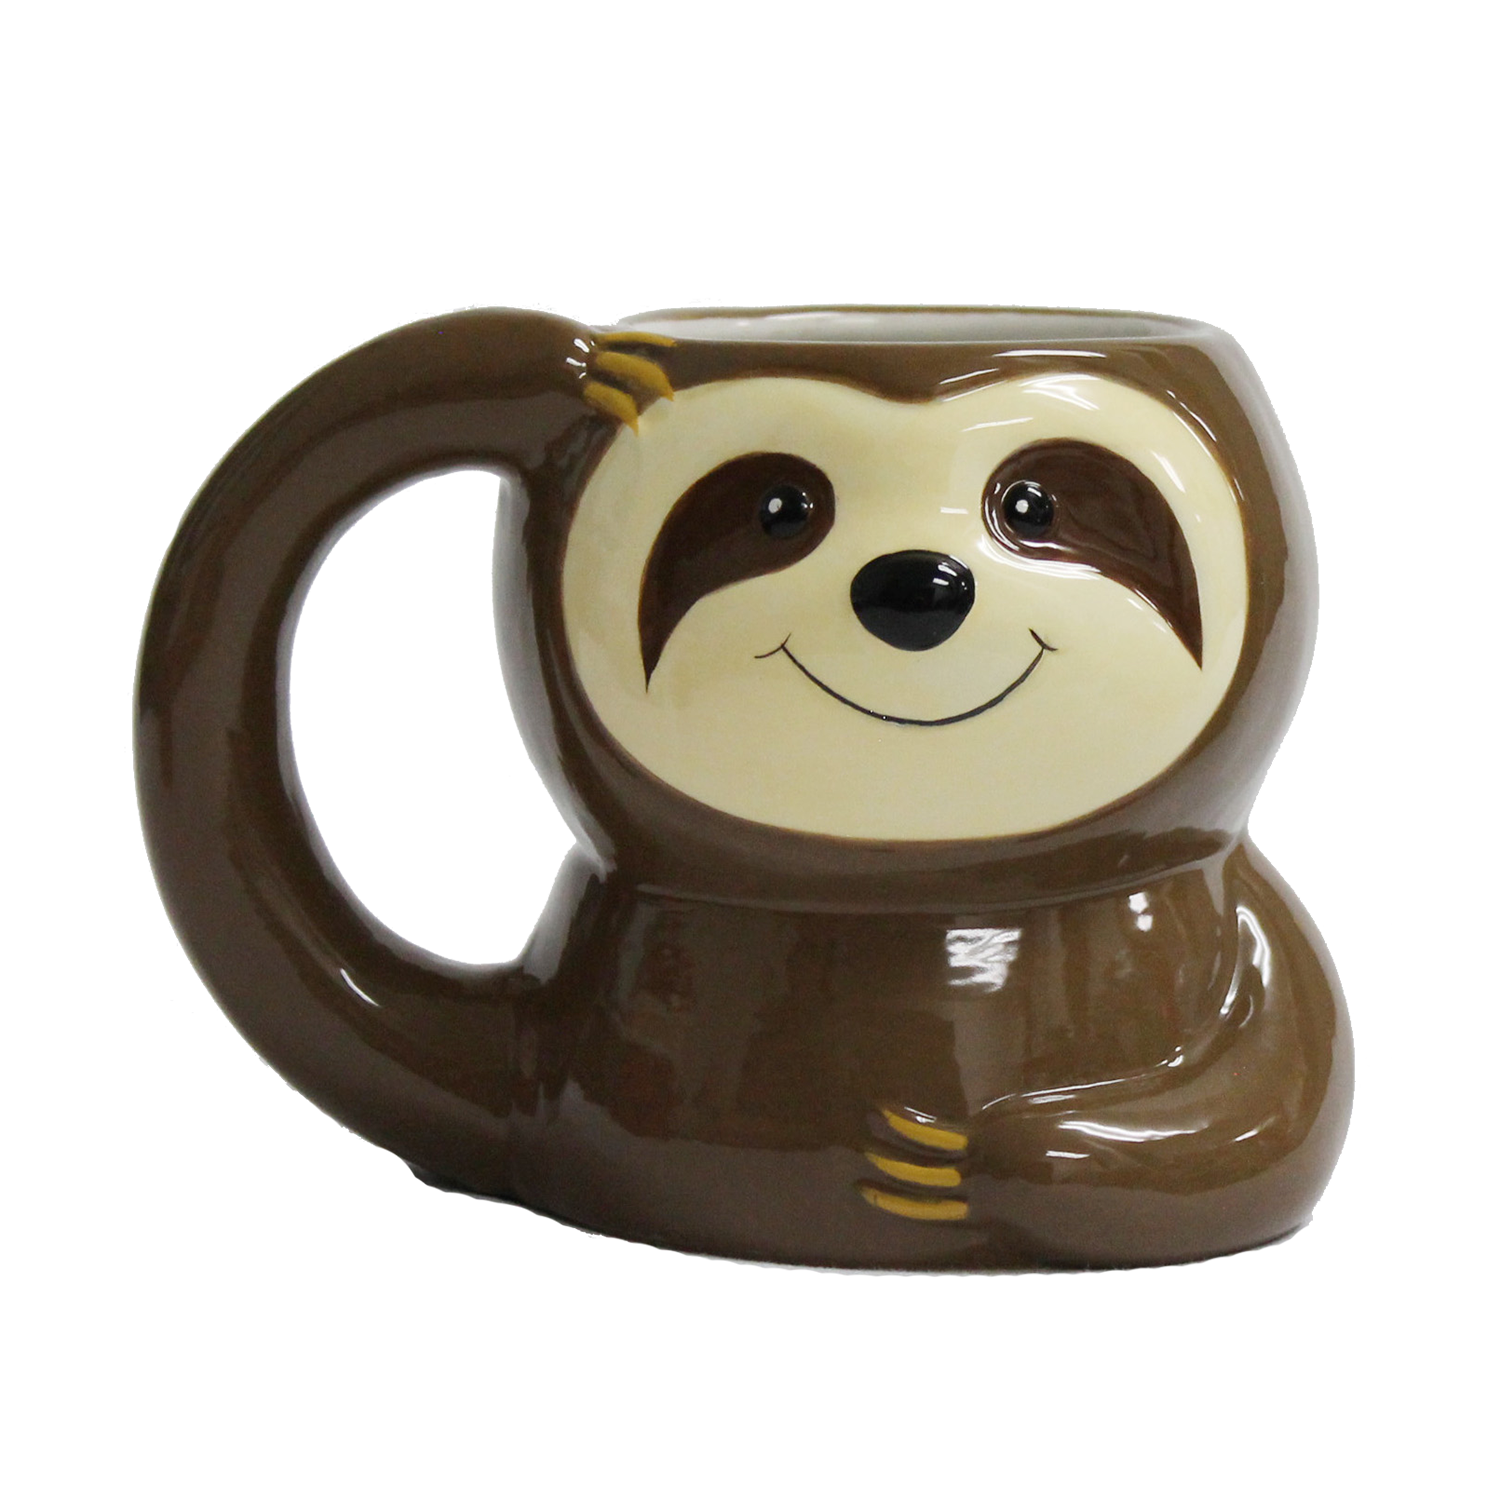 3D Mug Sloth